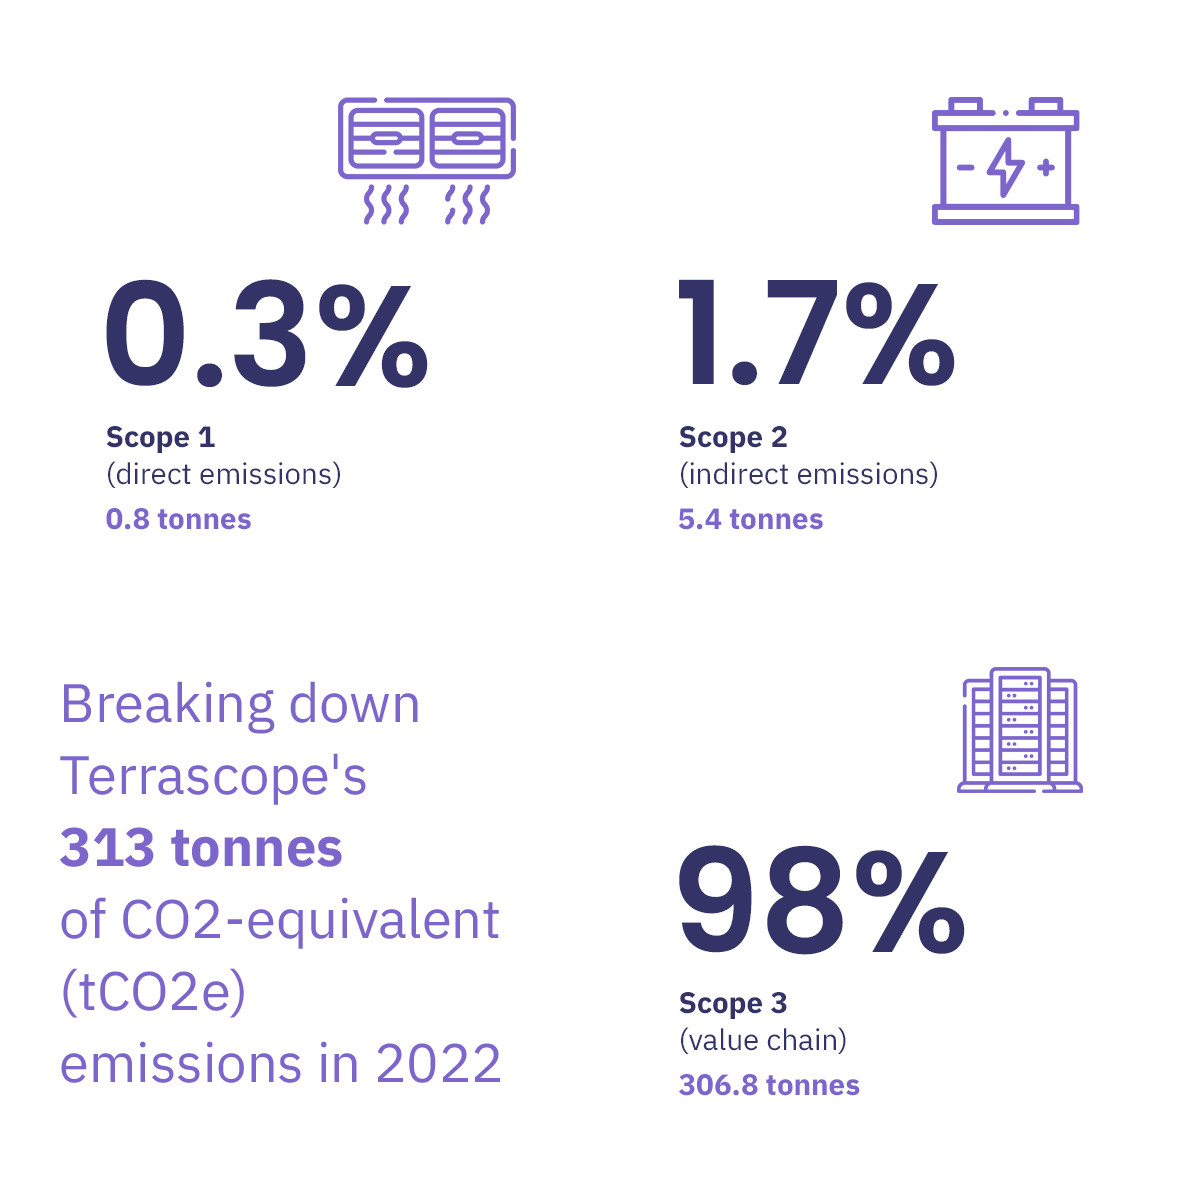 climate Pledge-net-zero-carbon-by-2040